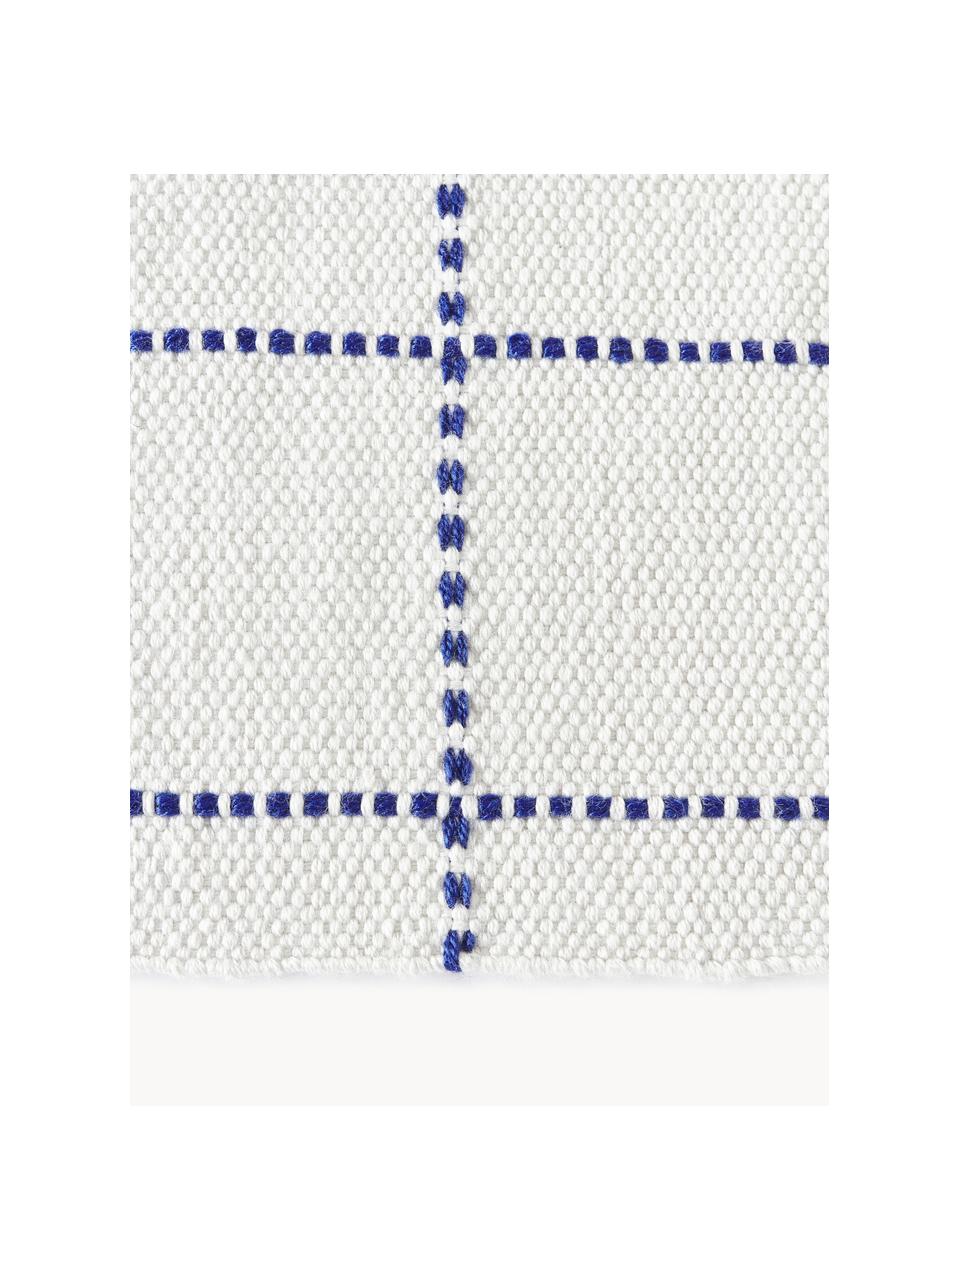 Interiérový/exteriérový koberec s třásněmi Prague, 100 % polyester, certifikace GRS

Materiál použitý v tomto produktu byl testován na škodlivé látky a certifikován podle STANDARD 100 od OEKO-TEX®, 11-62055, Shirley., Bílá, modrá, Š 80 cm, D 150 cm (velikost XS)